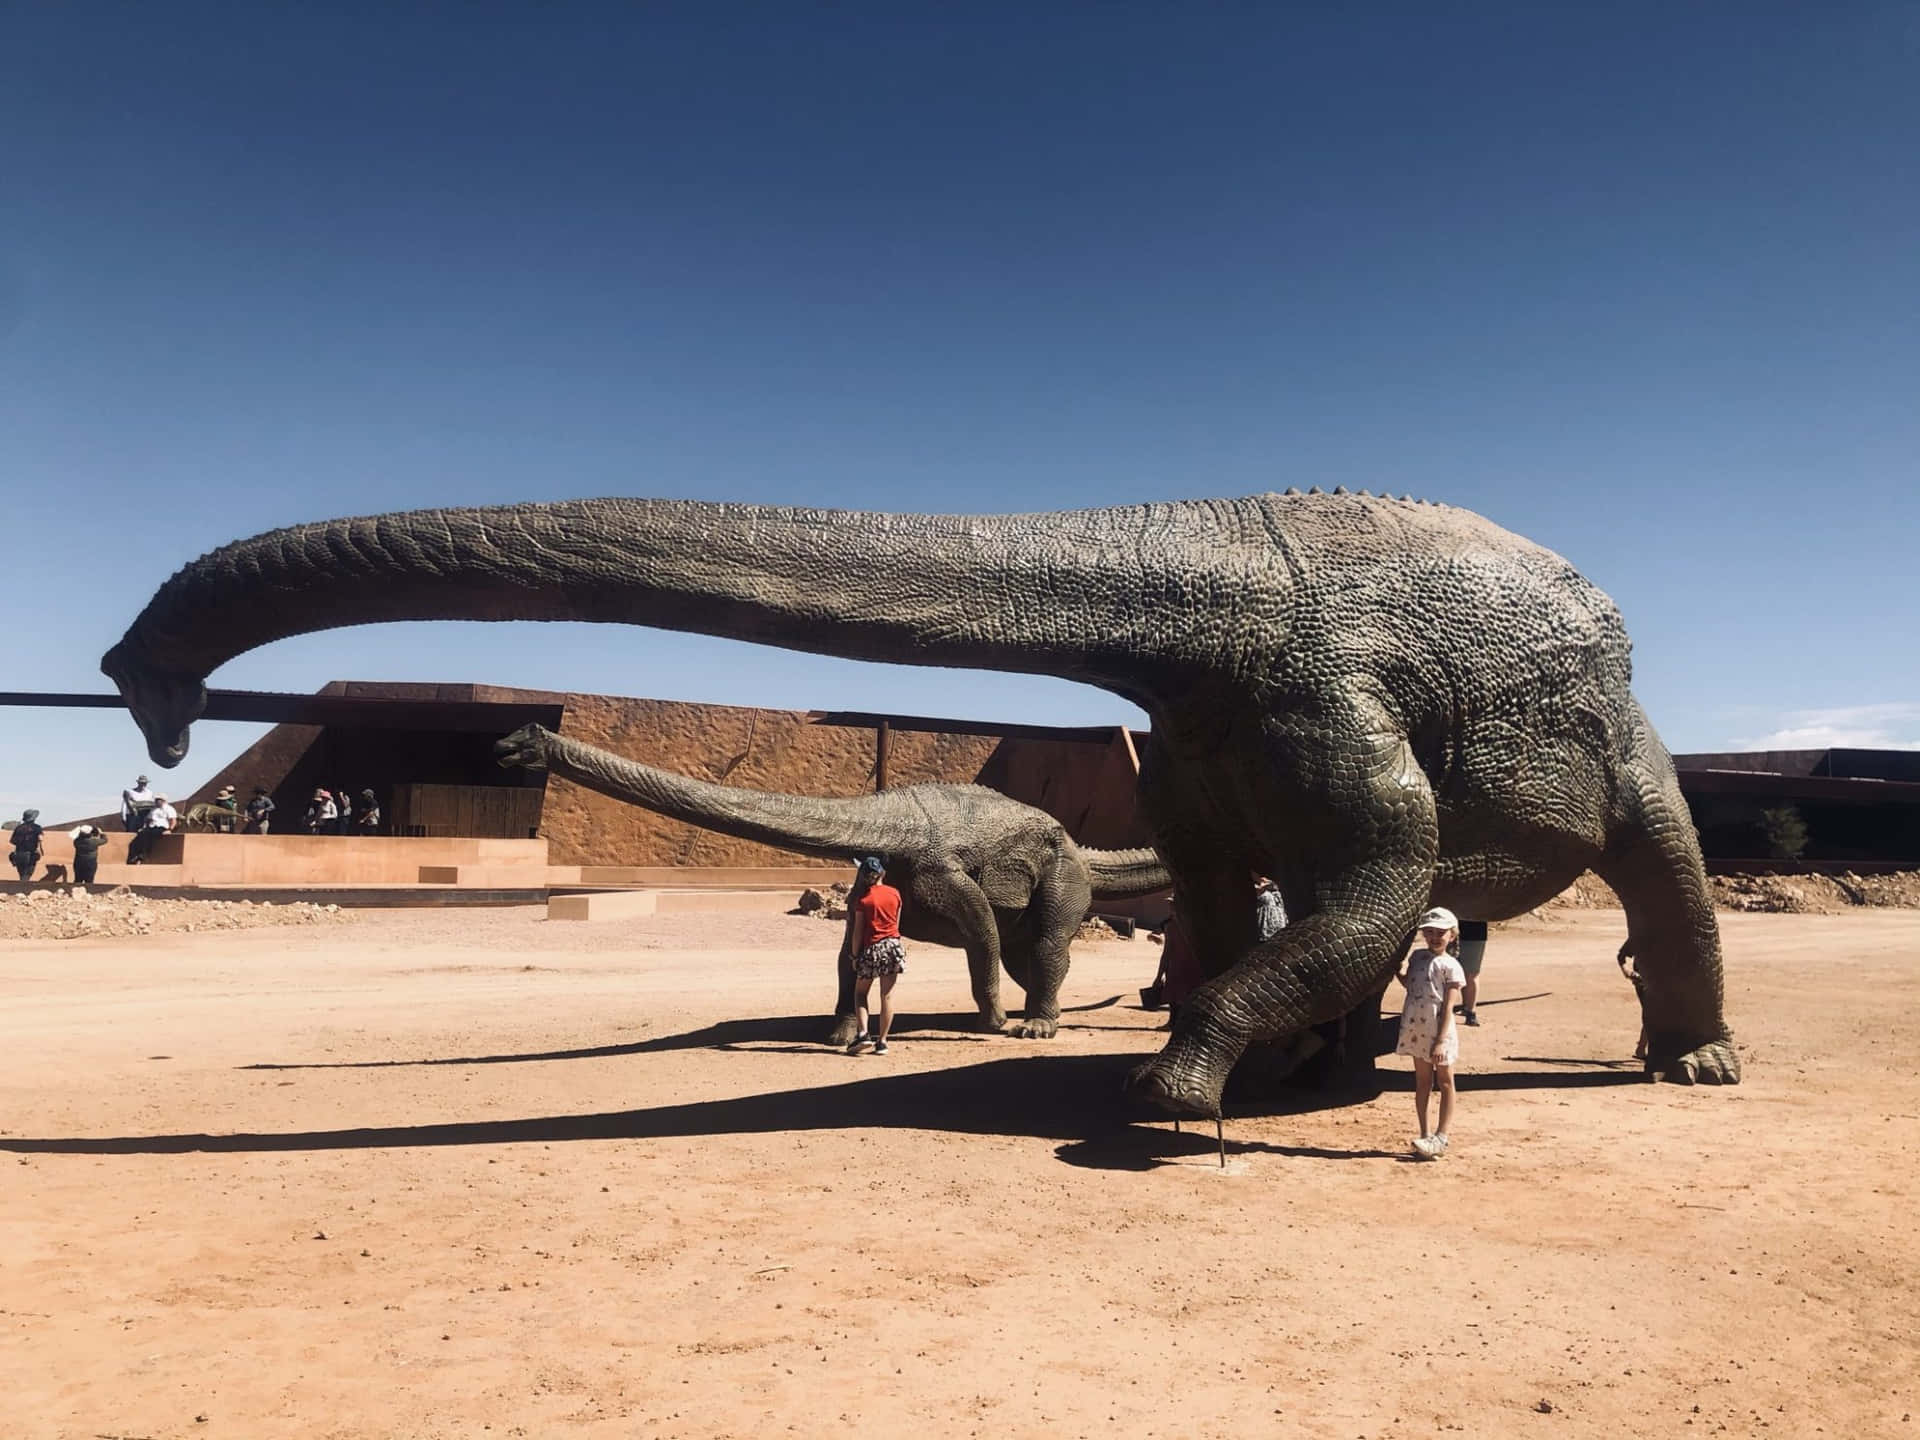 Imagendel Museo De Historia De Los Dinosaurios De Australia